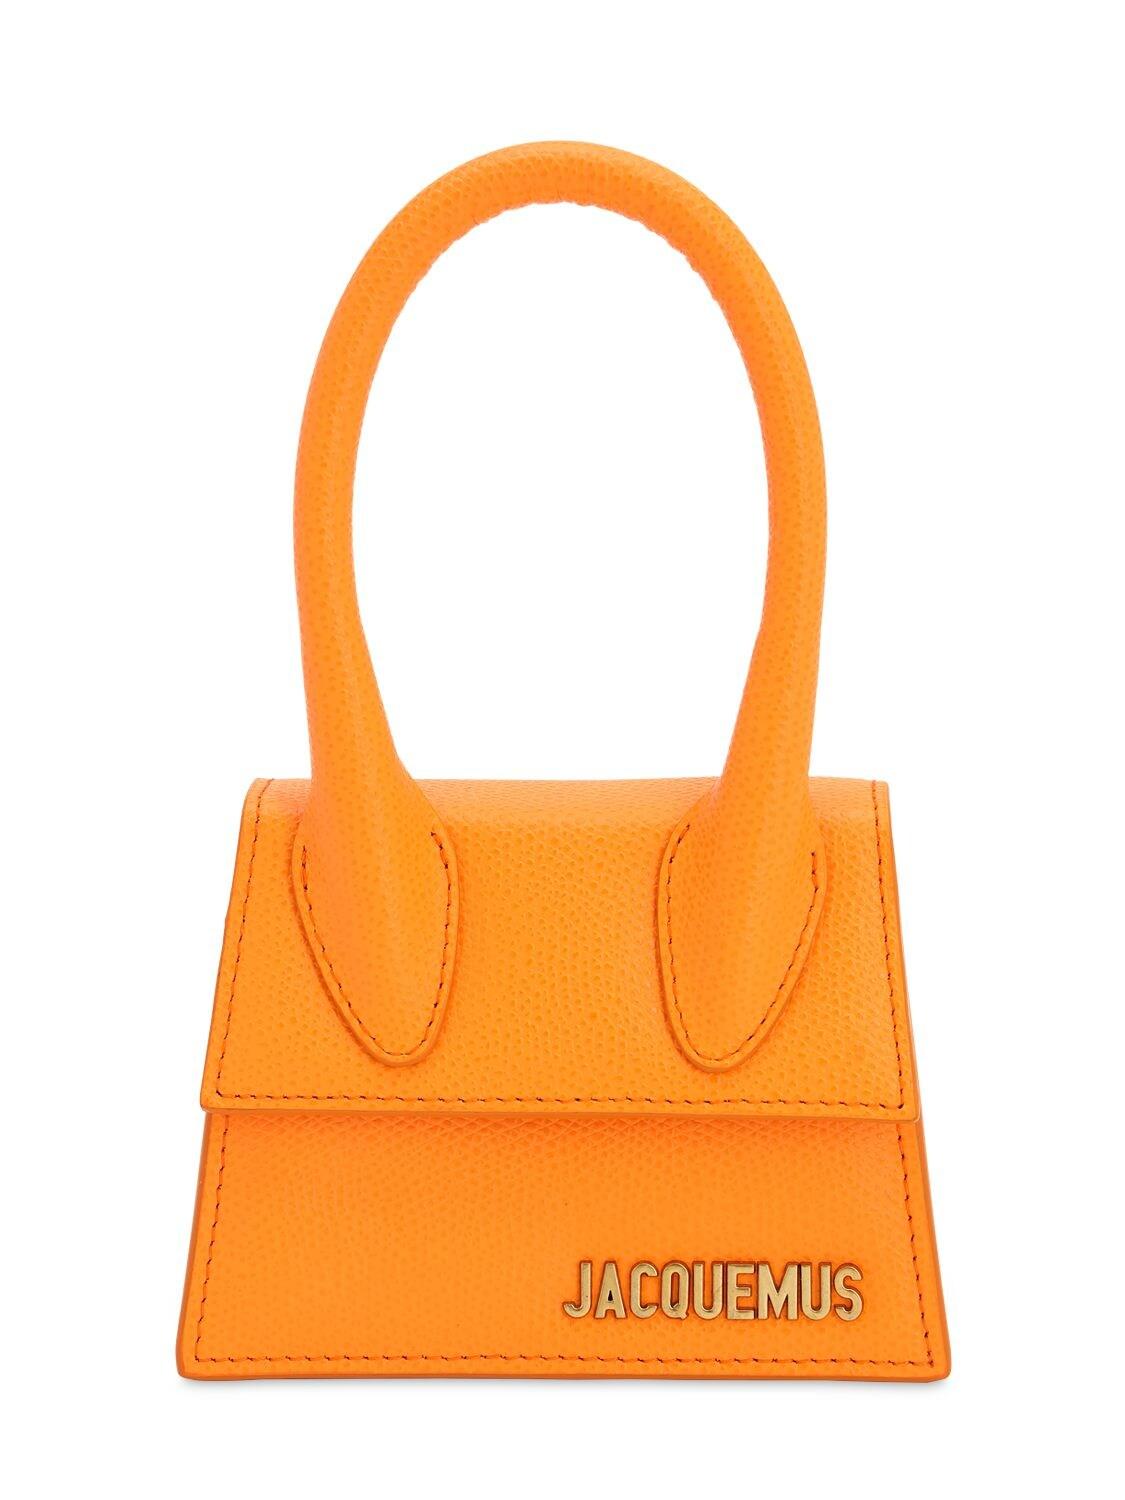 Jacquemus Leather Orange Le Chiquito Bag - Lyst